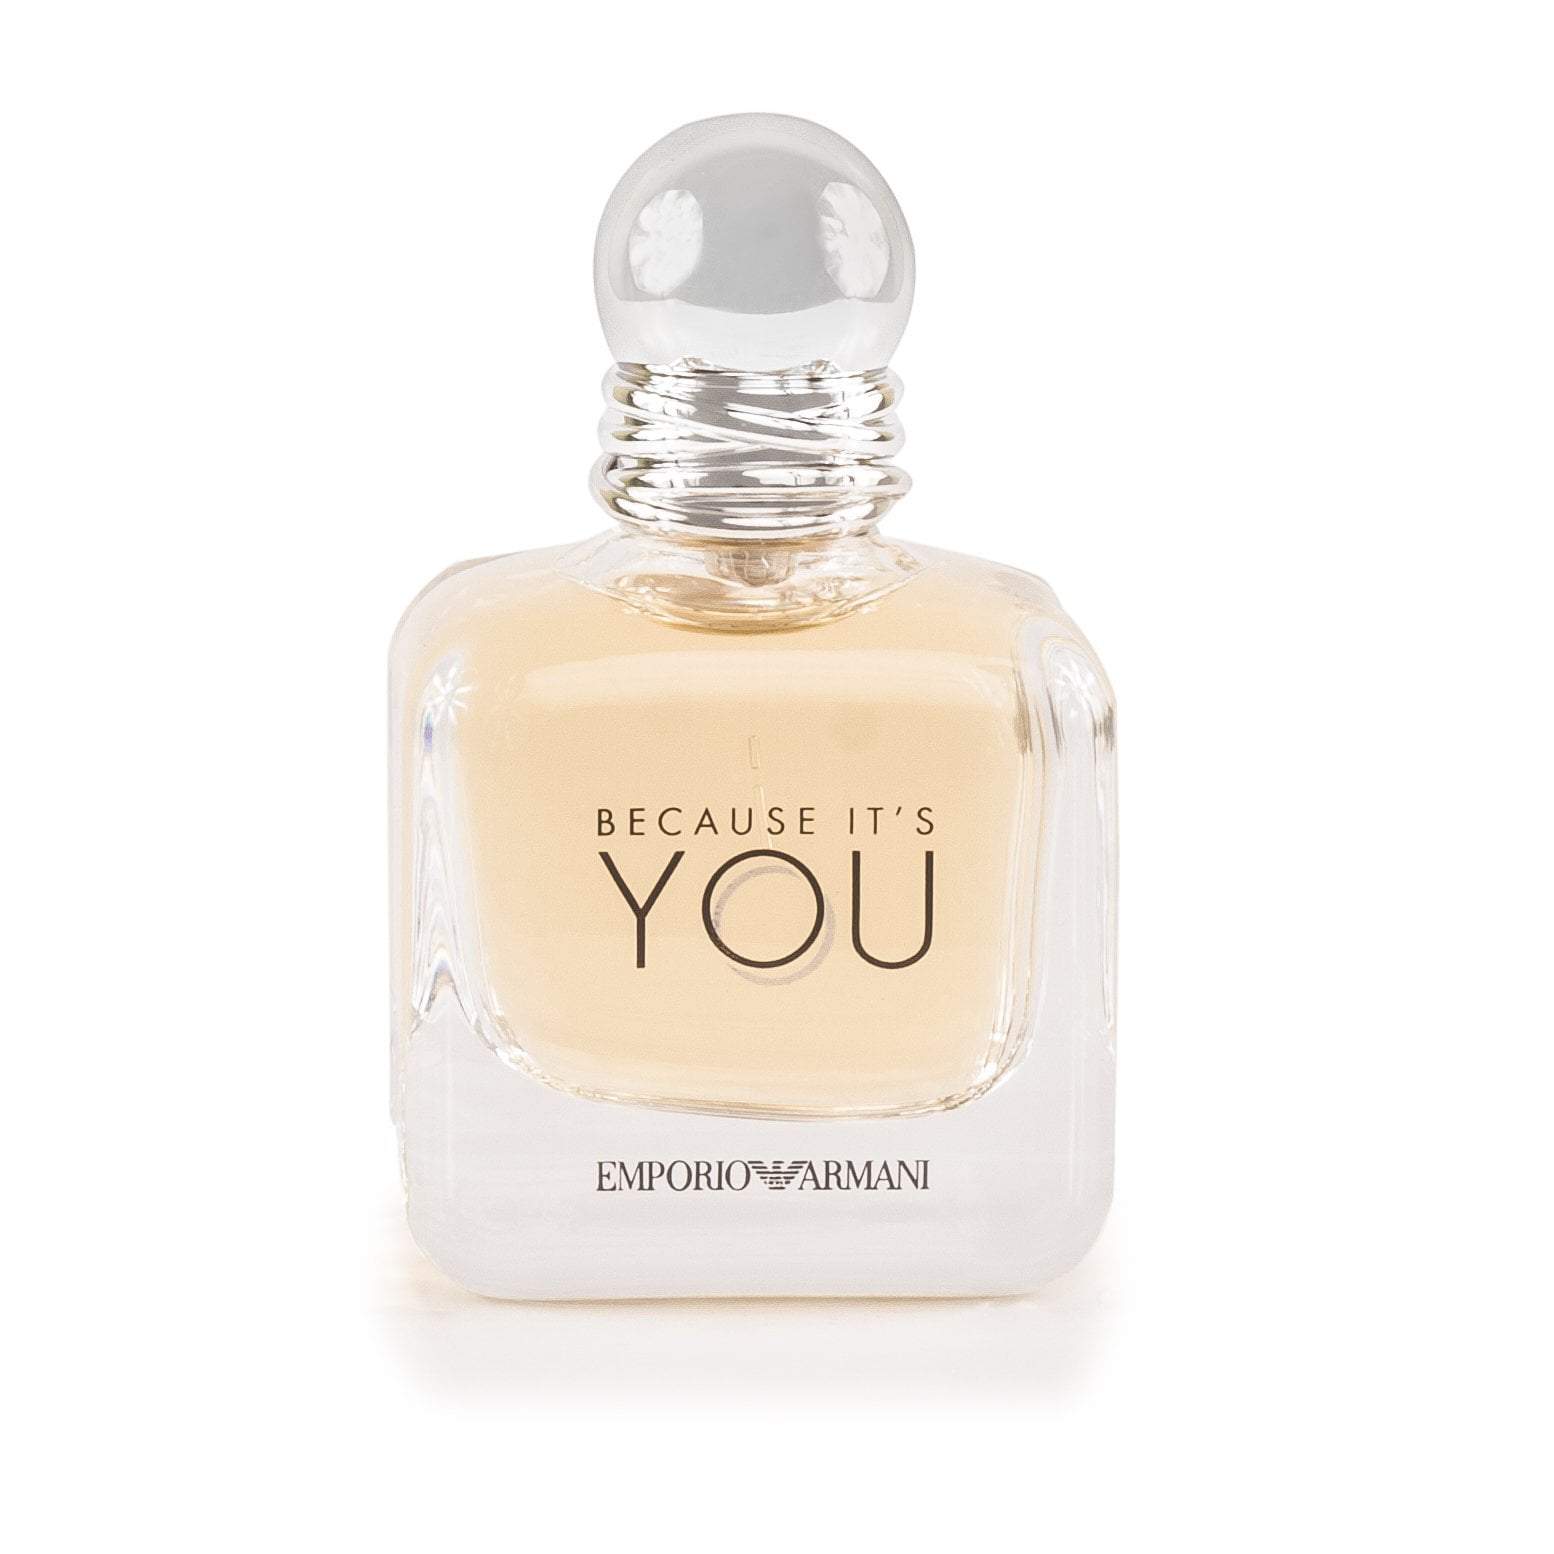 Because It's You Eau de Parfum Spray for Women by Giorgio Armani 1.7 oz. Click to open in modal